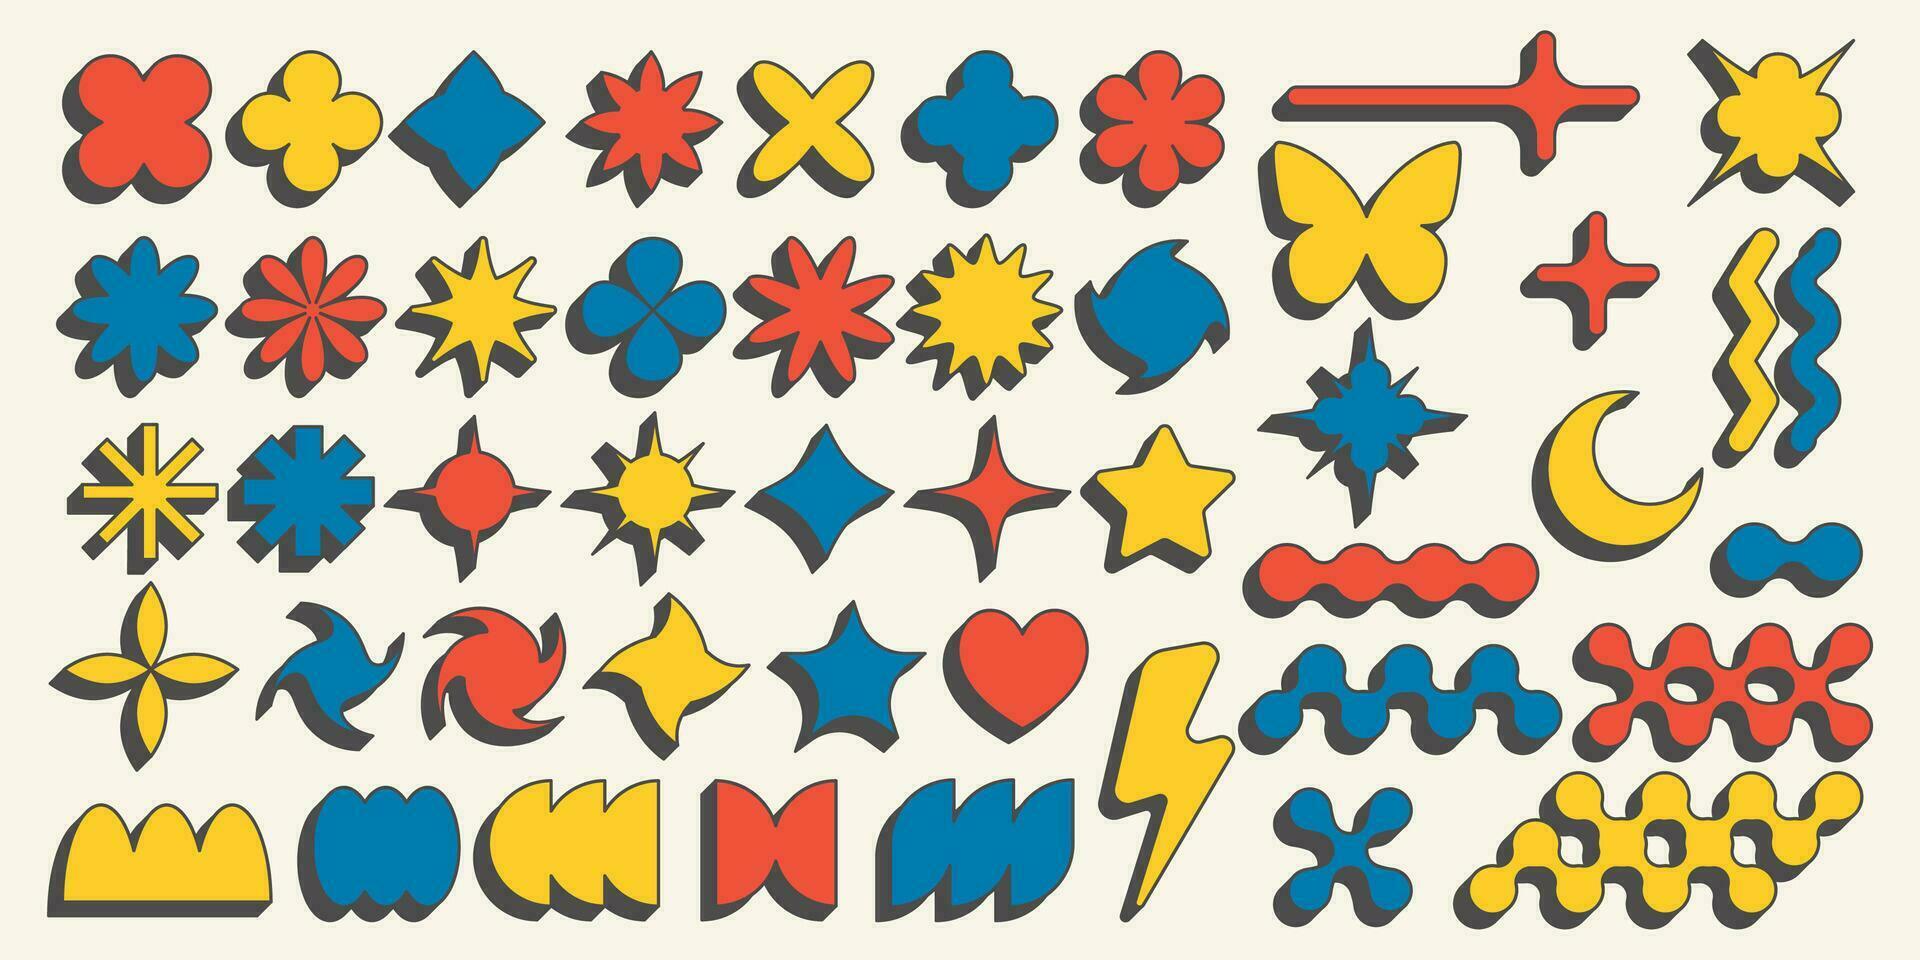 abstract meetkundig elementen voor ontwerp. neobrutalisme grafisch vormen. minimaal groovy y2k retro stickers. reeks van retro etiketten. gemakkelijk vector bloemen, vlinder en sterren.